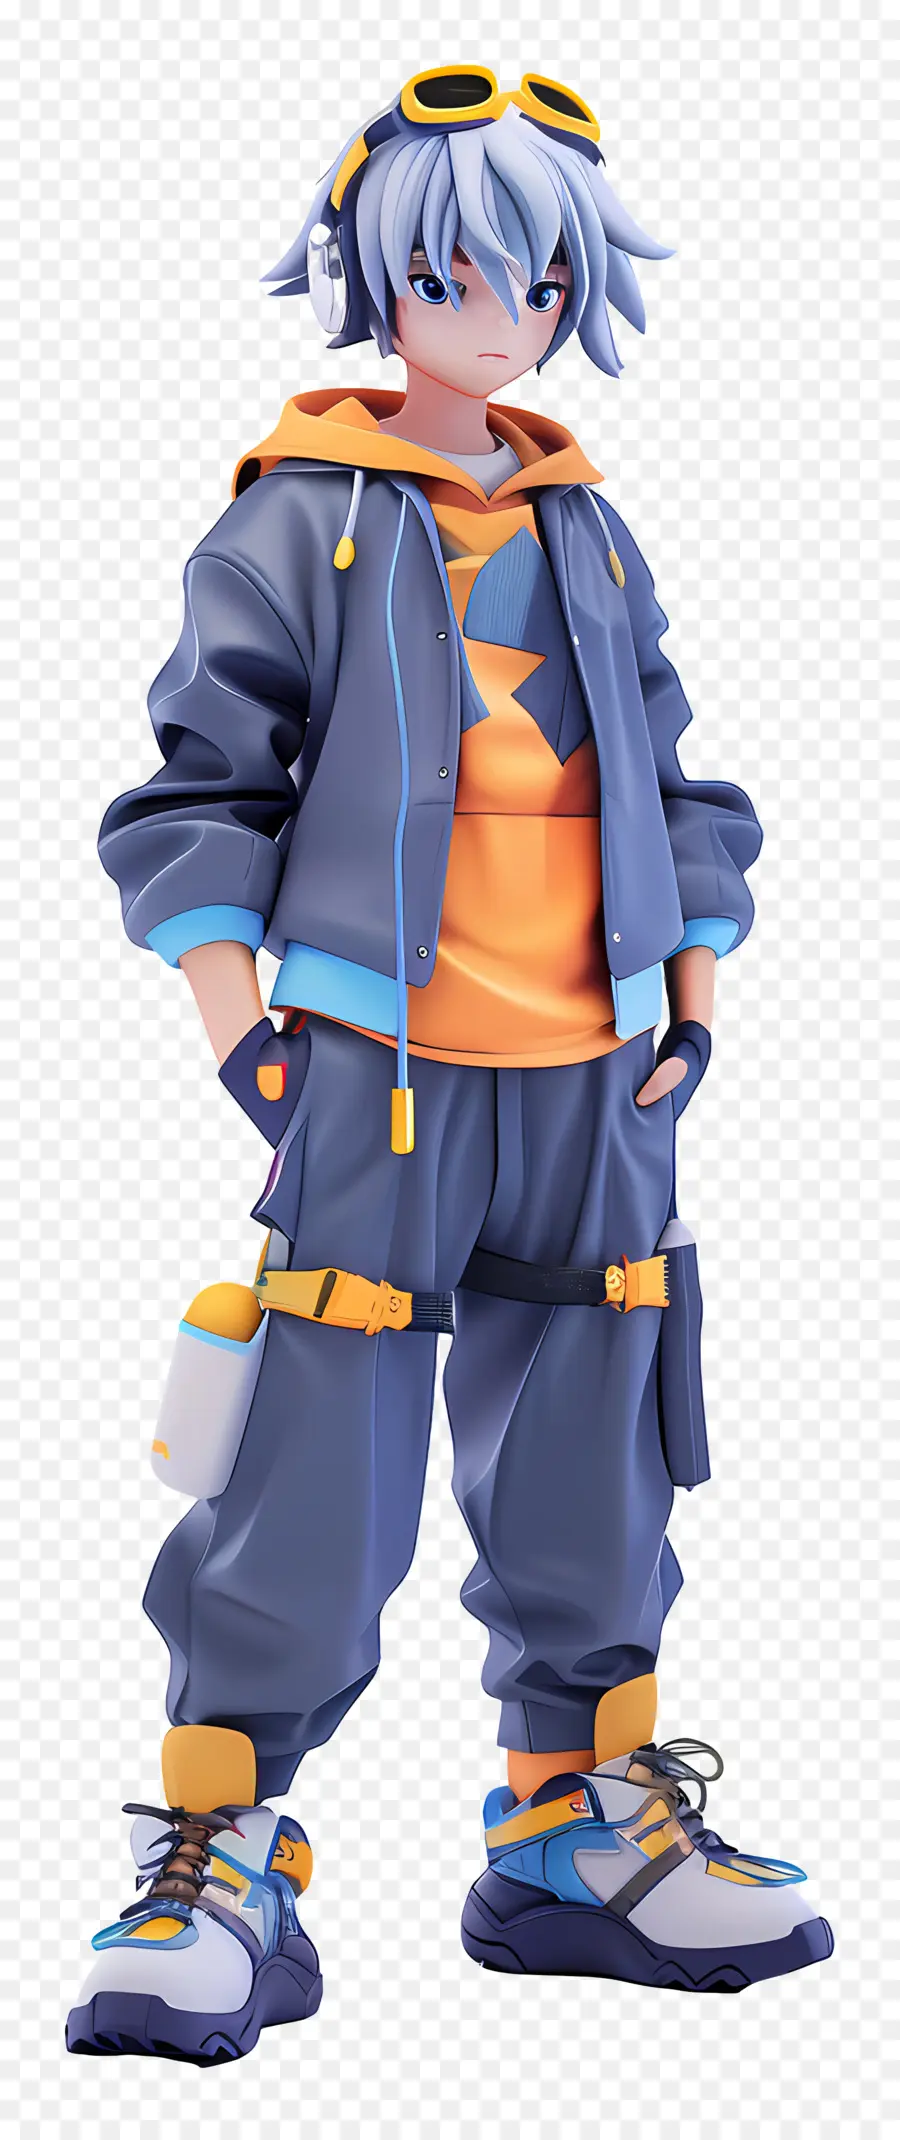 Anime -Figur modische Streetstyle -Jacke Sonnenbrille - Stilvoller Charakter im farbenfrohen Outfit lächelt zuversichtlich